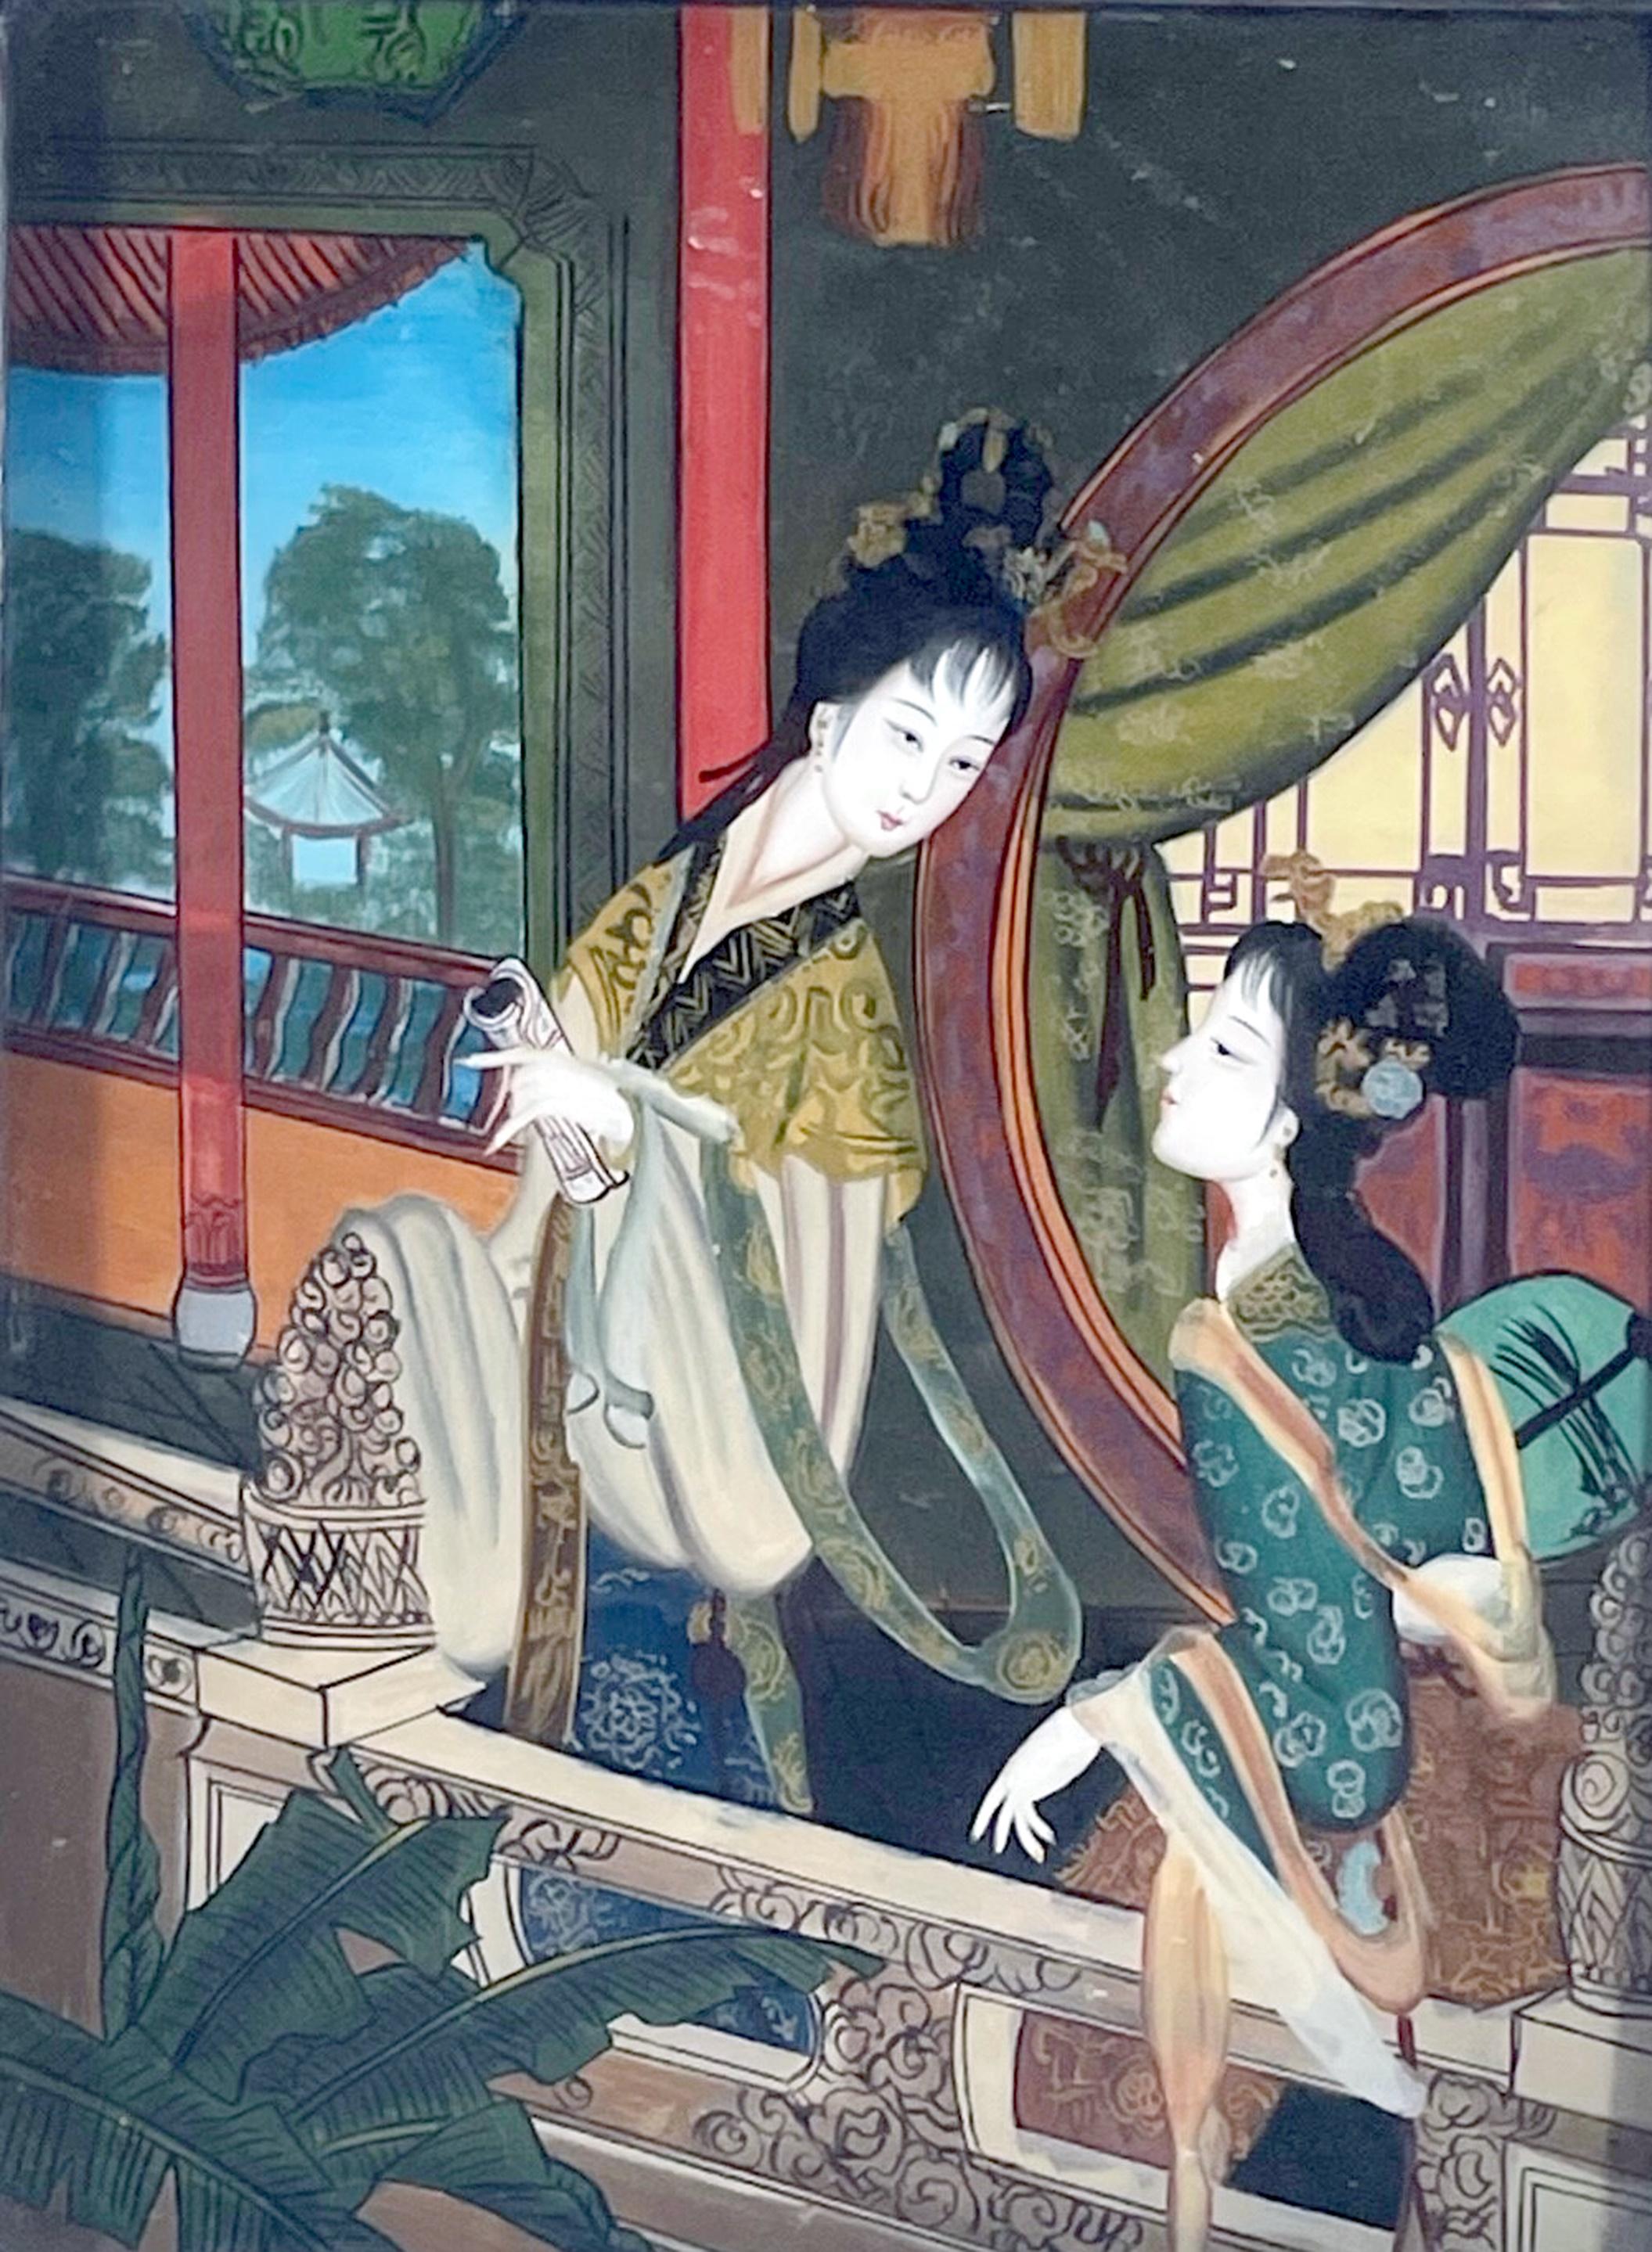 Peinture ancienne en Verre Eglomise Chinese Export Reverse Glass Painting.

Magnifique peinture chinoise en verre inversé représentant deux femmes dans un jardin chinois avec un rouleau. Cette peinture est particulièrement vibrante et exquise dans